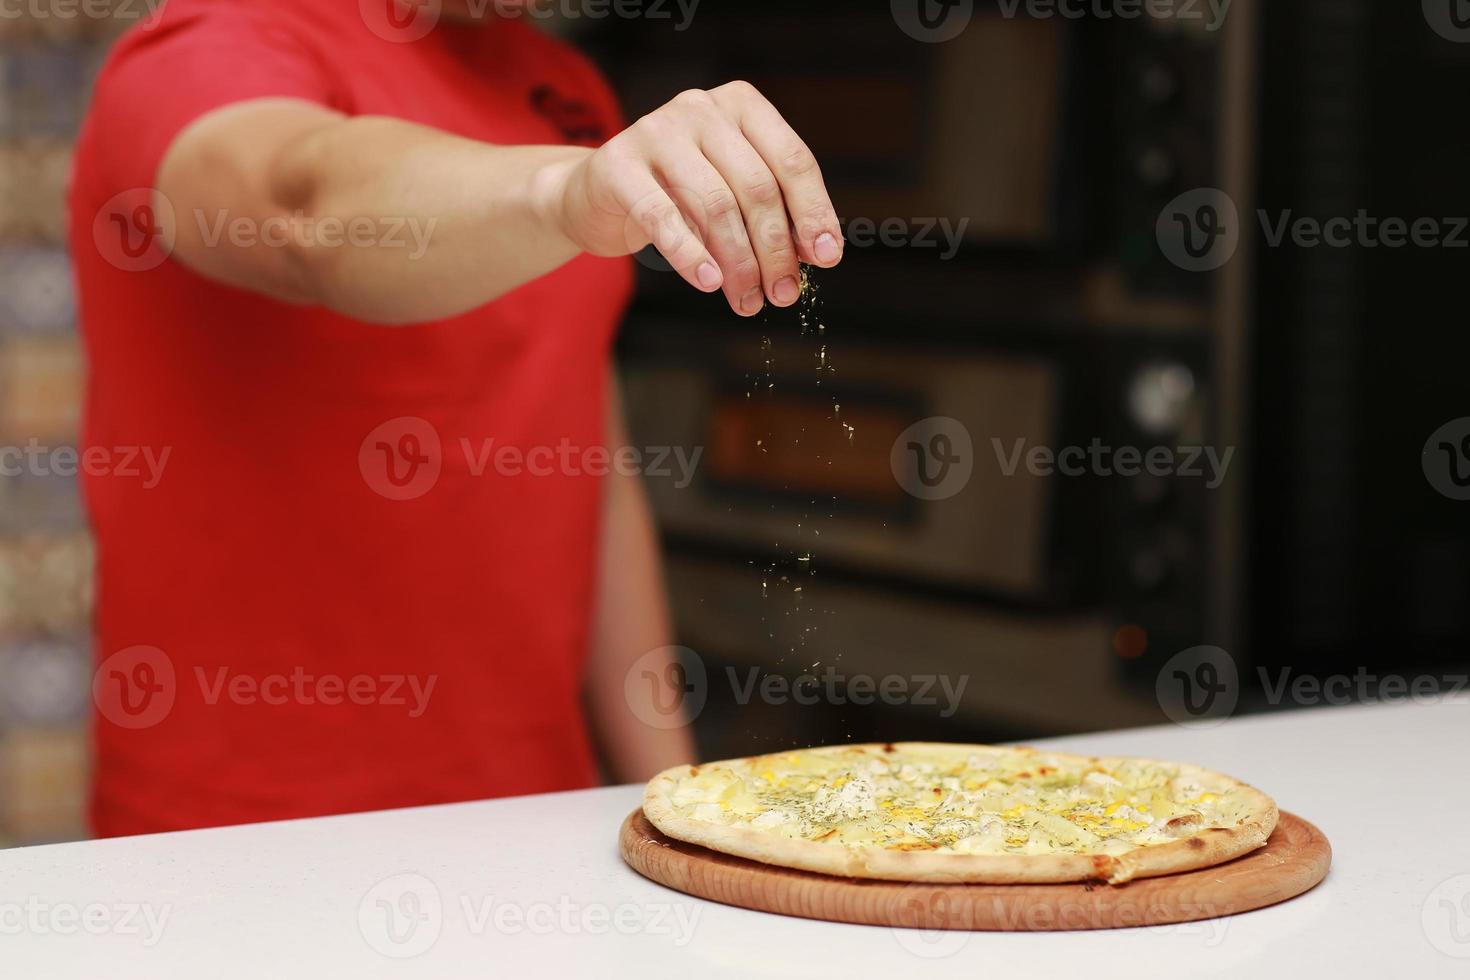 de chef maakt de pizza klaar en bestrooit deze met kruiden. het concept van heerlijk eten en gezond eten. op een zwarte achtergrond voor ontwerp of belettering van tekst. selectieve focus foto